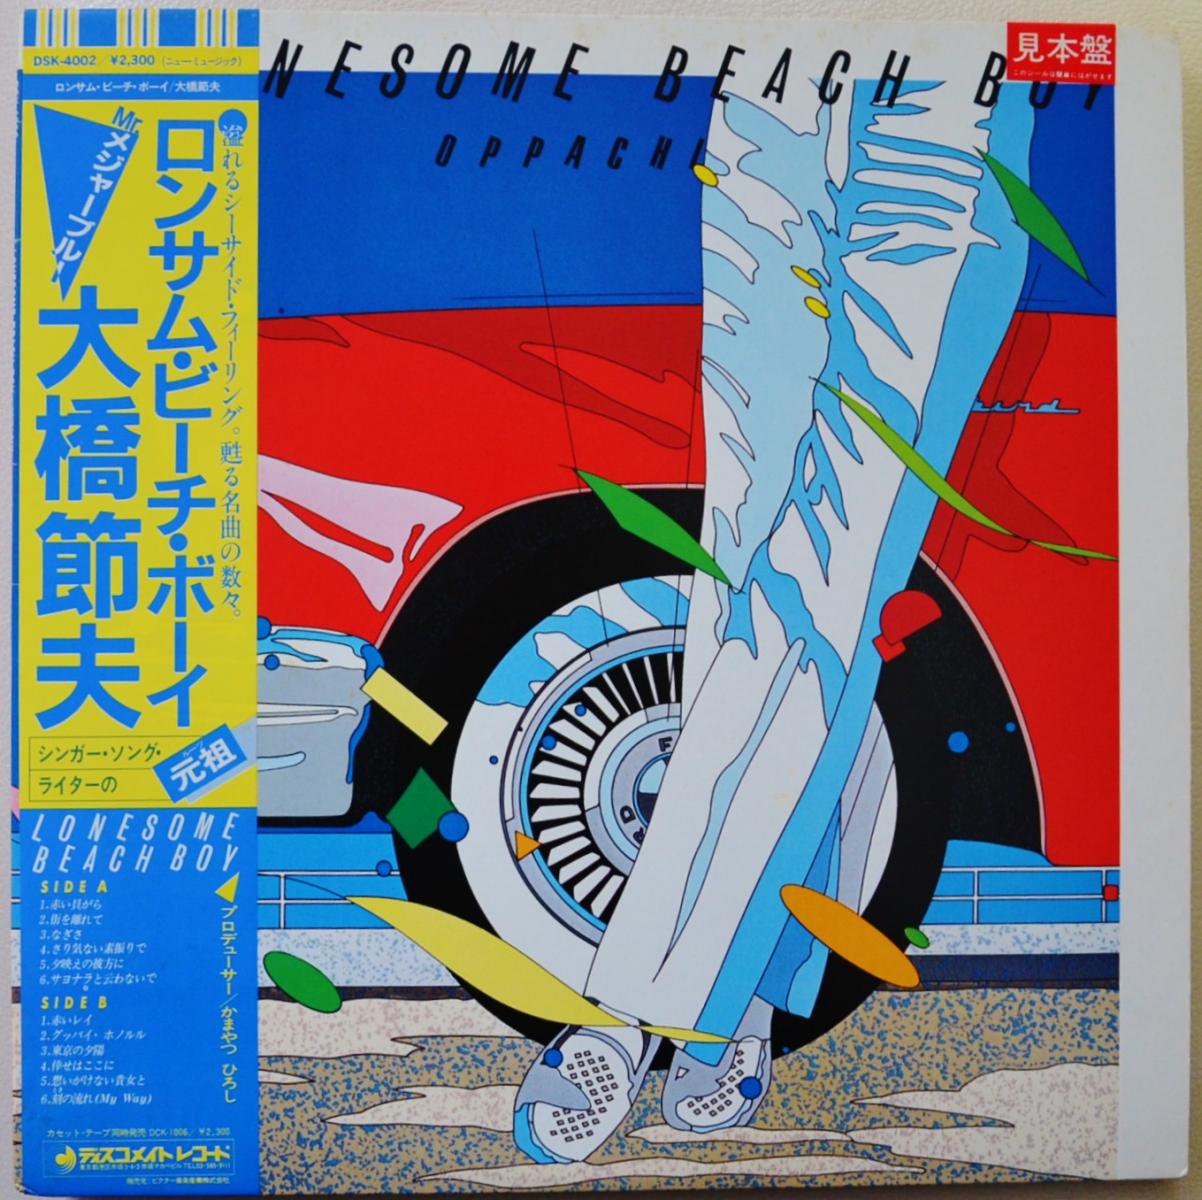 大橋節夫 / ロンサム・ビーチ・ボーイ LONESOME BEACH BOY - OPPACHI- (LP)